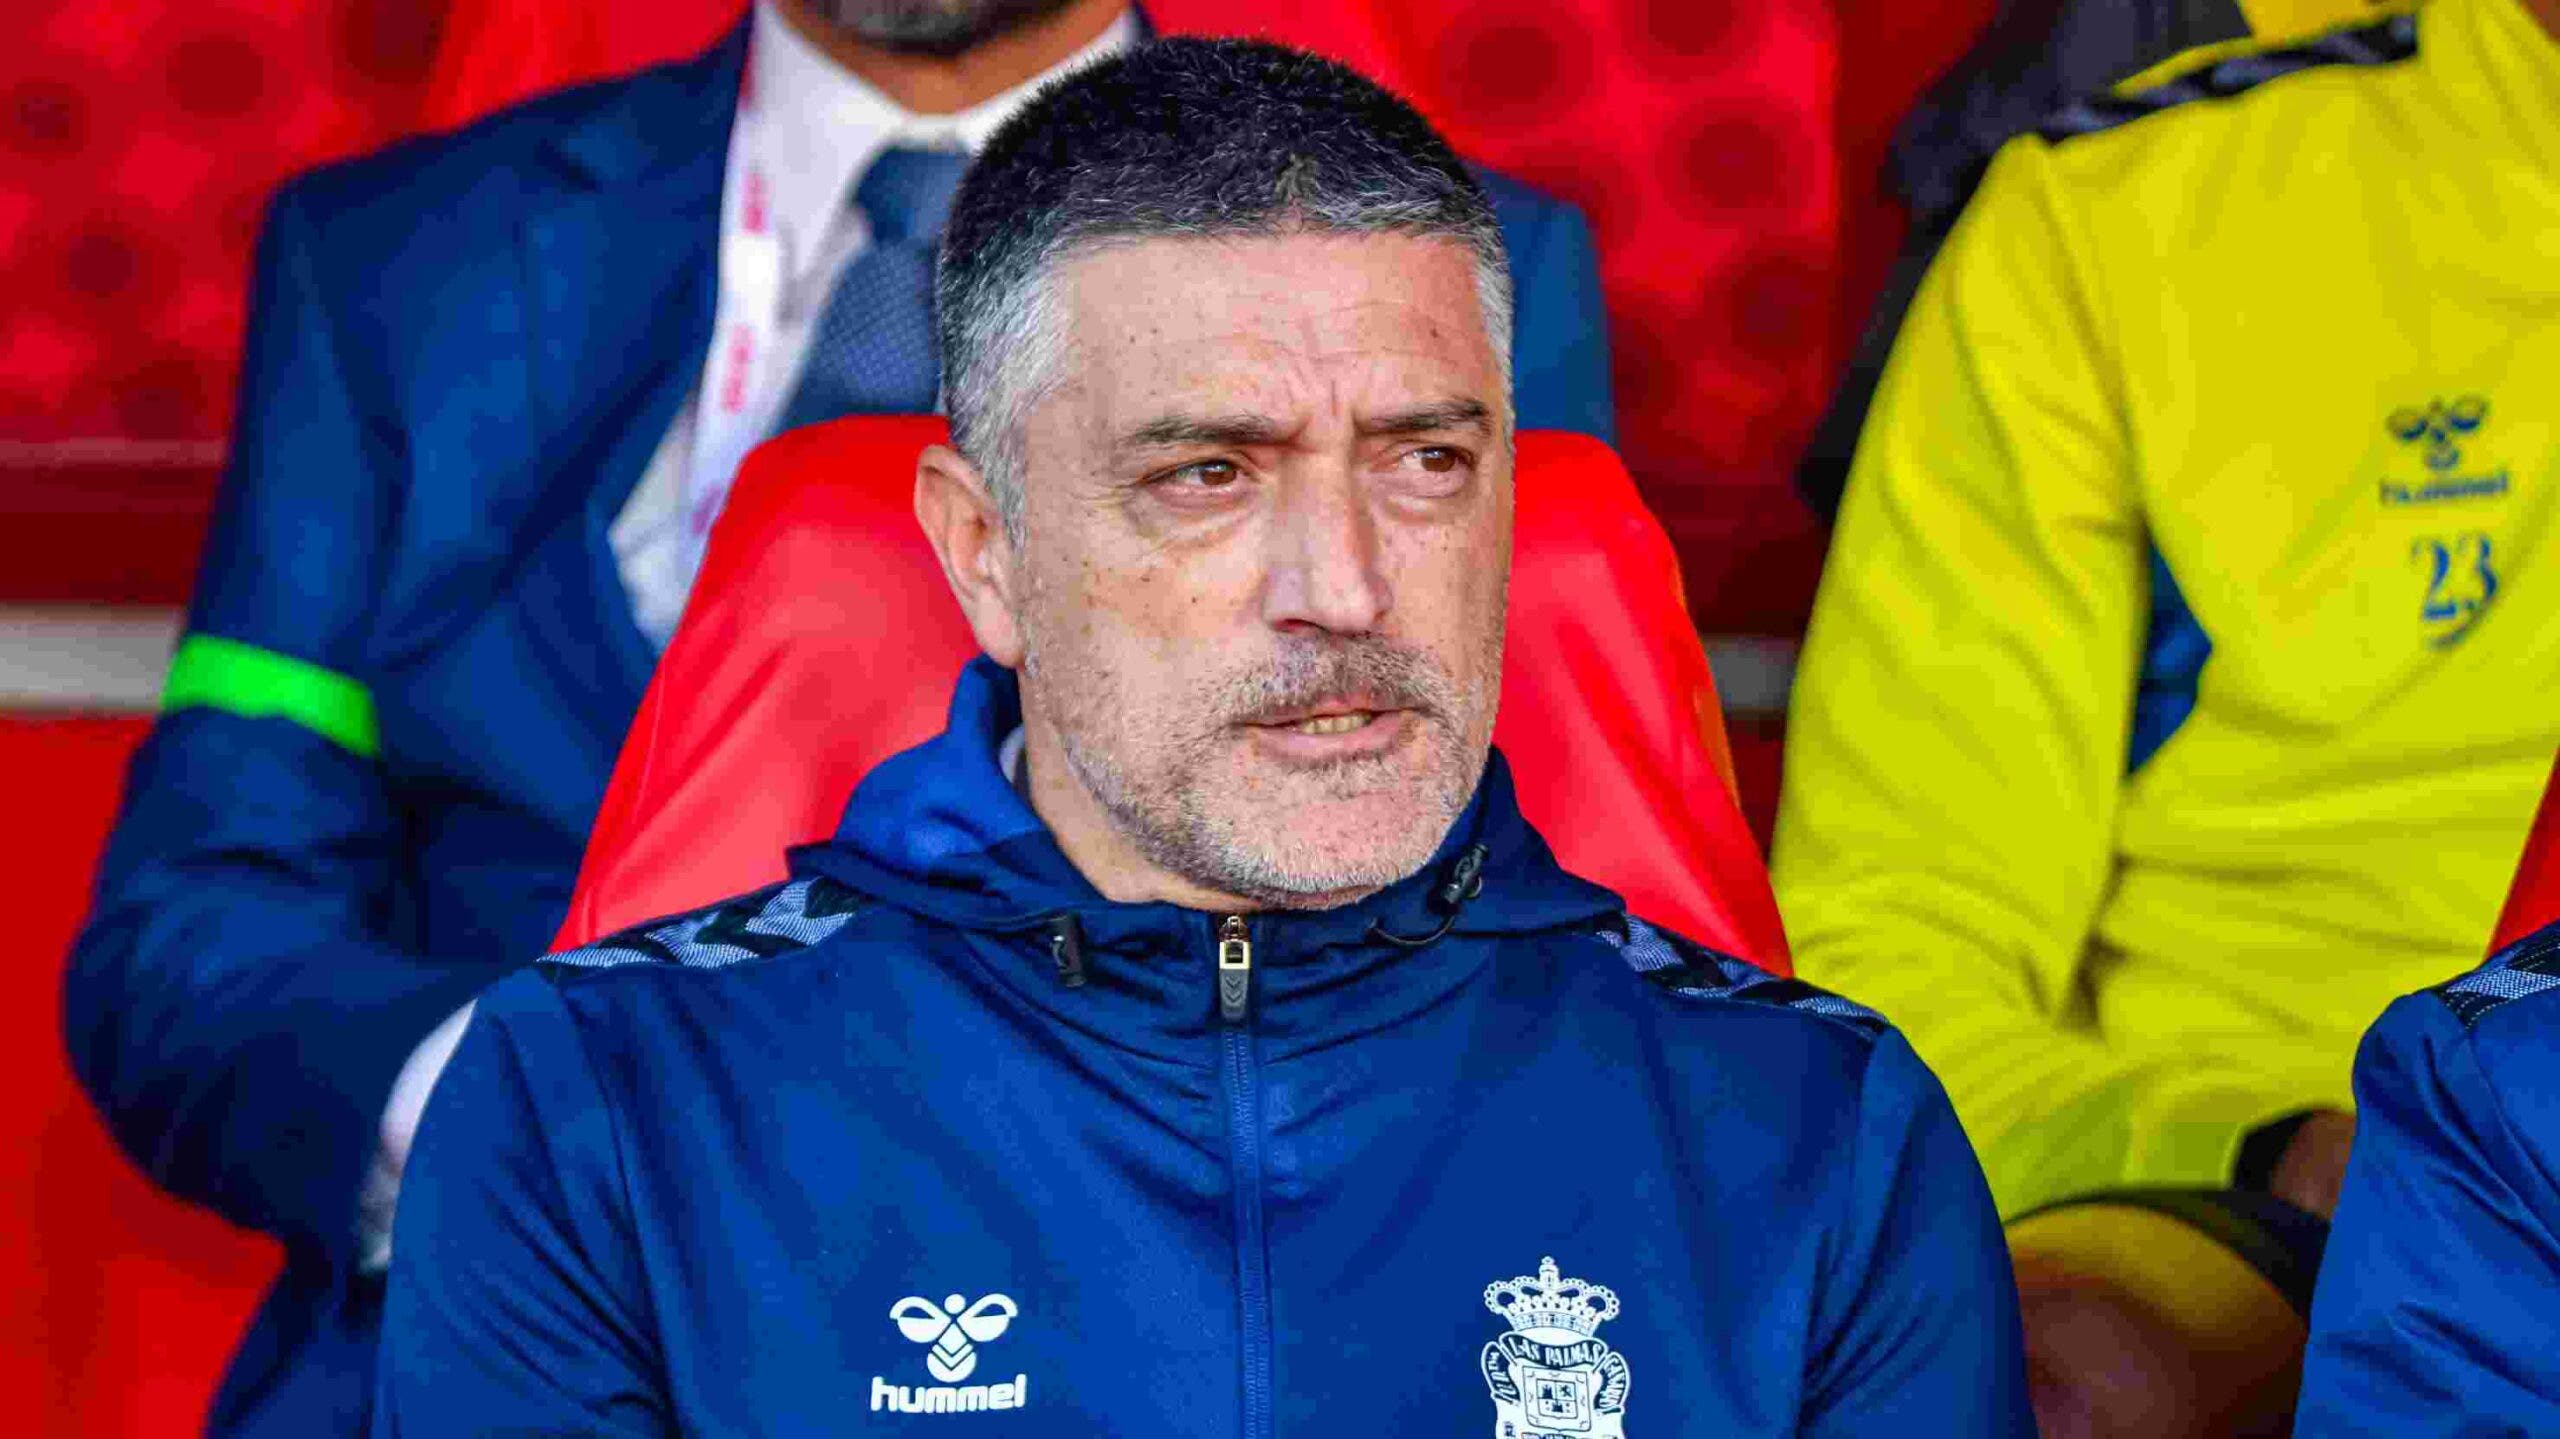 García Pimienta reacts to Las Palmas' extension offer
	

